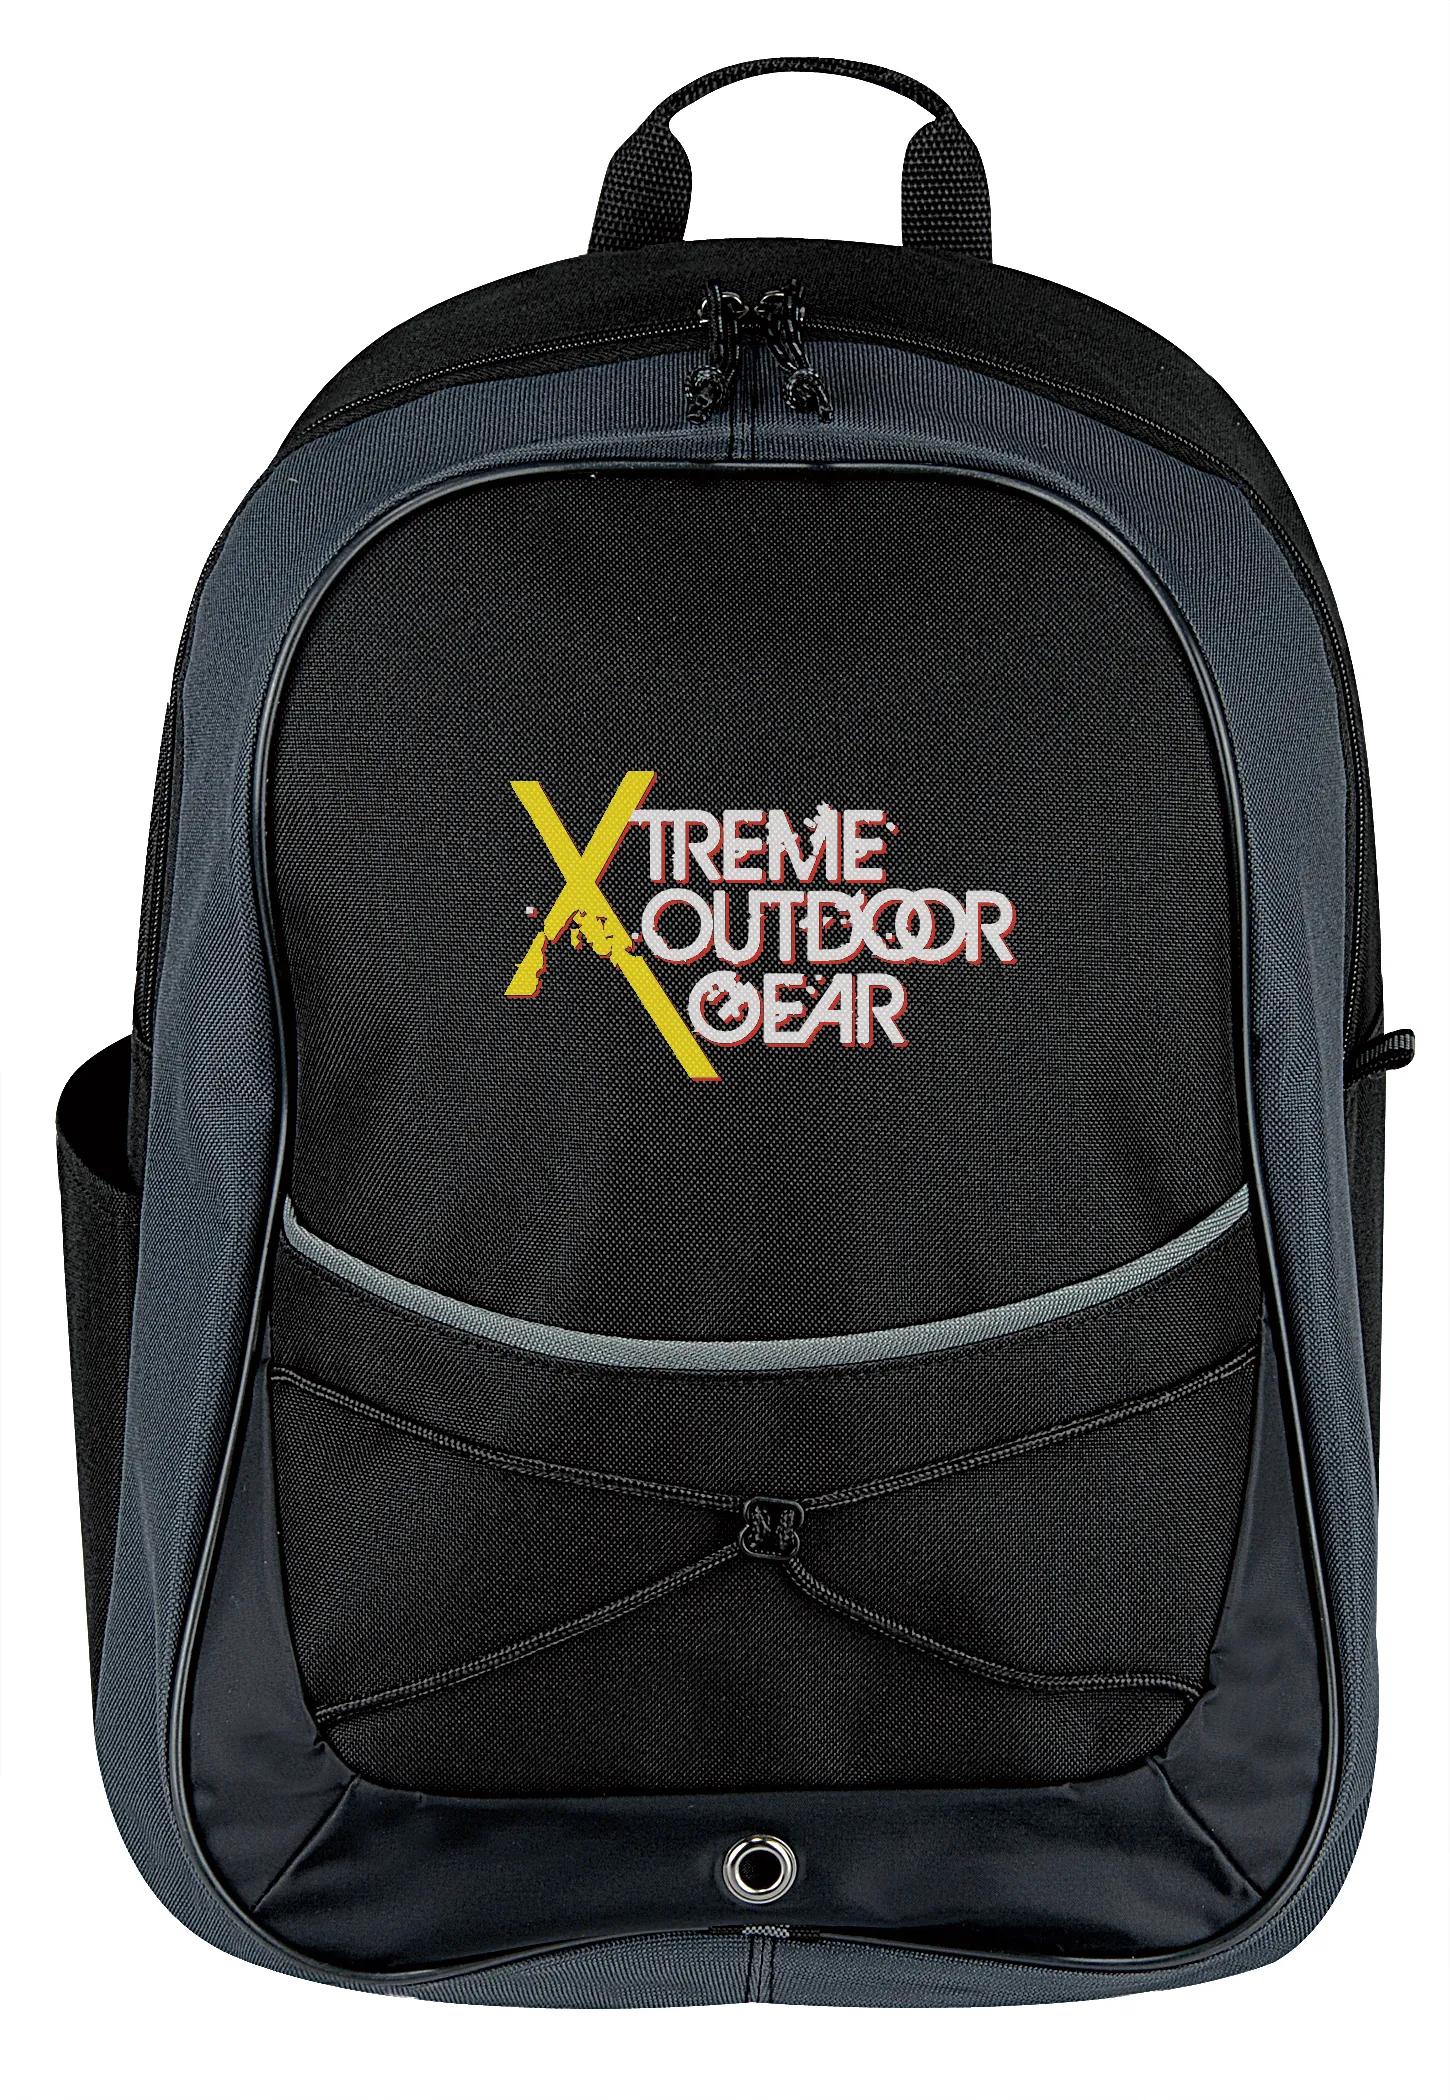 Tri-Tone Sport Backpack 5 of 8